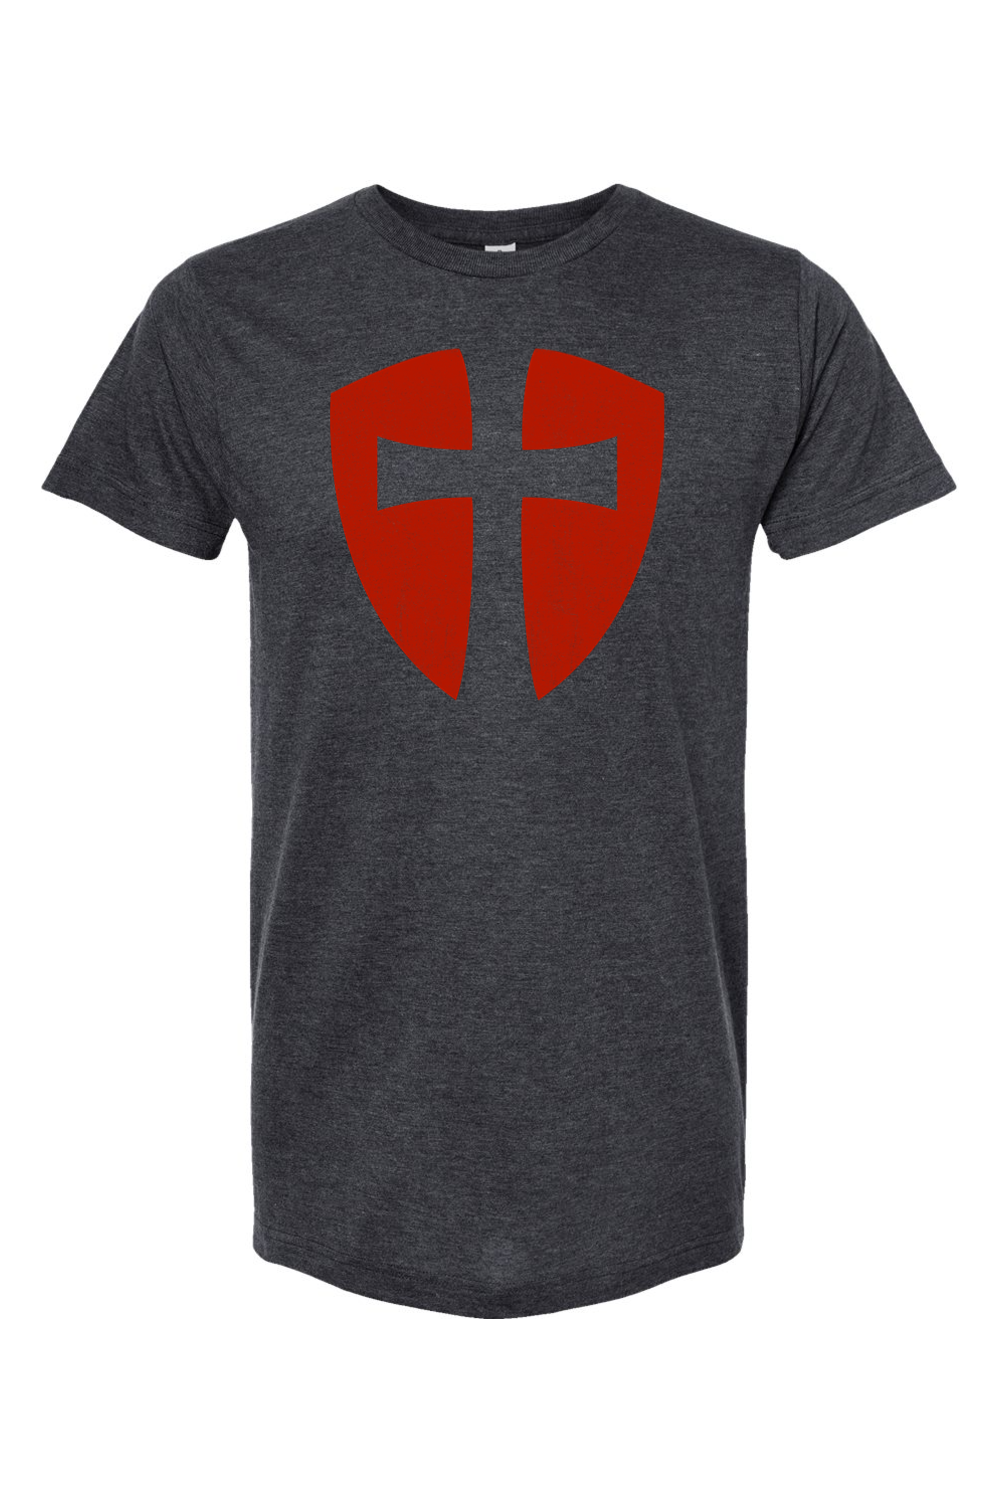 Knights Templar Cross Shield